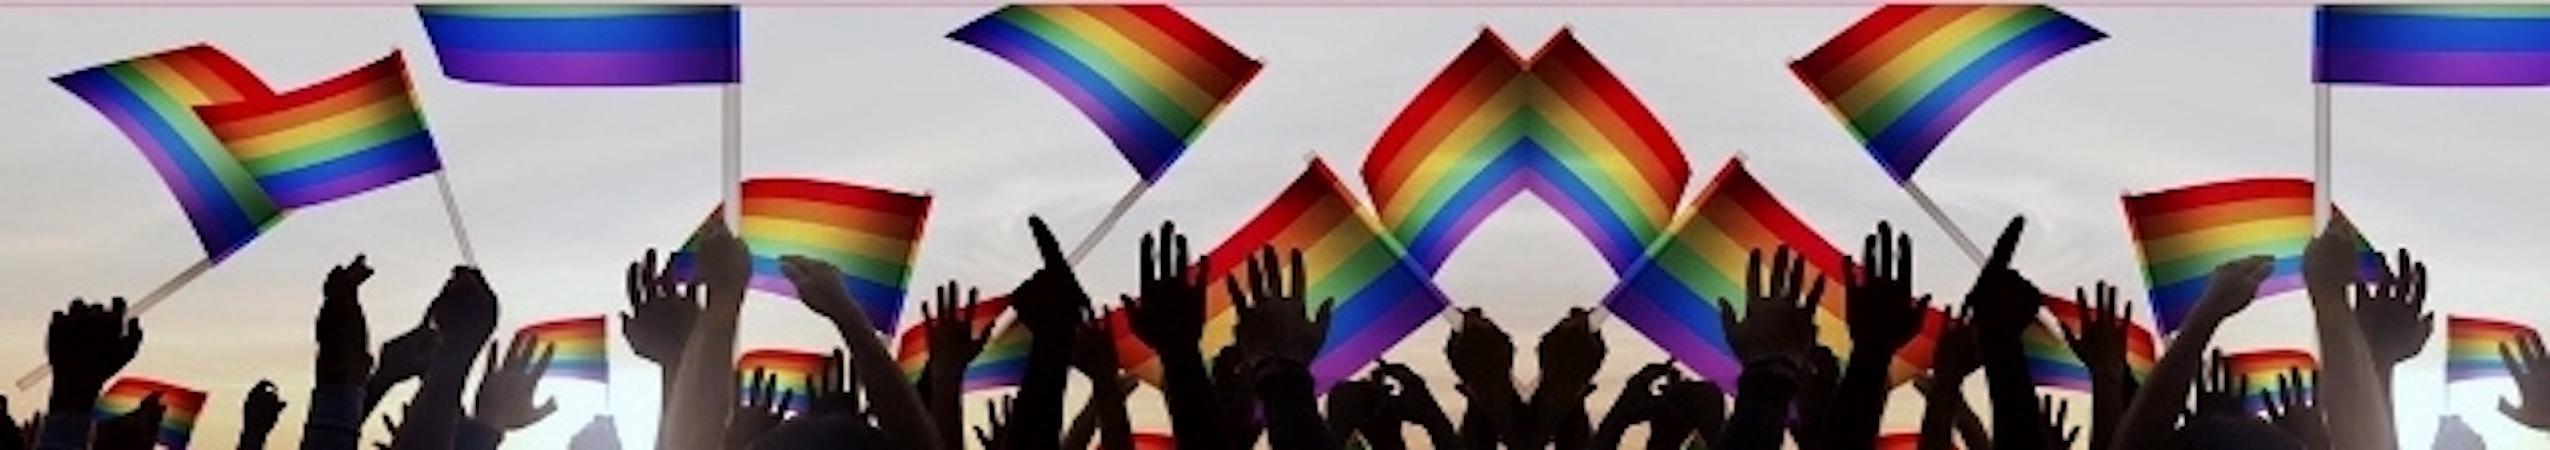 Hands waving Pride flags